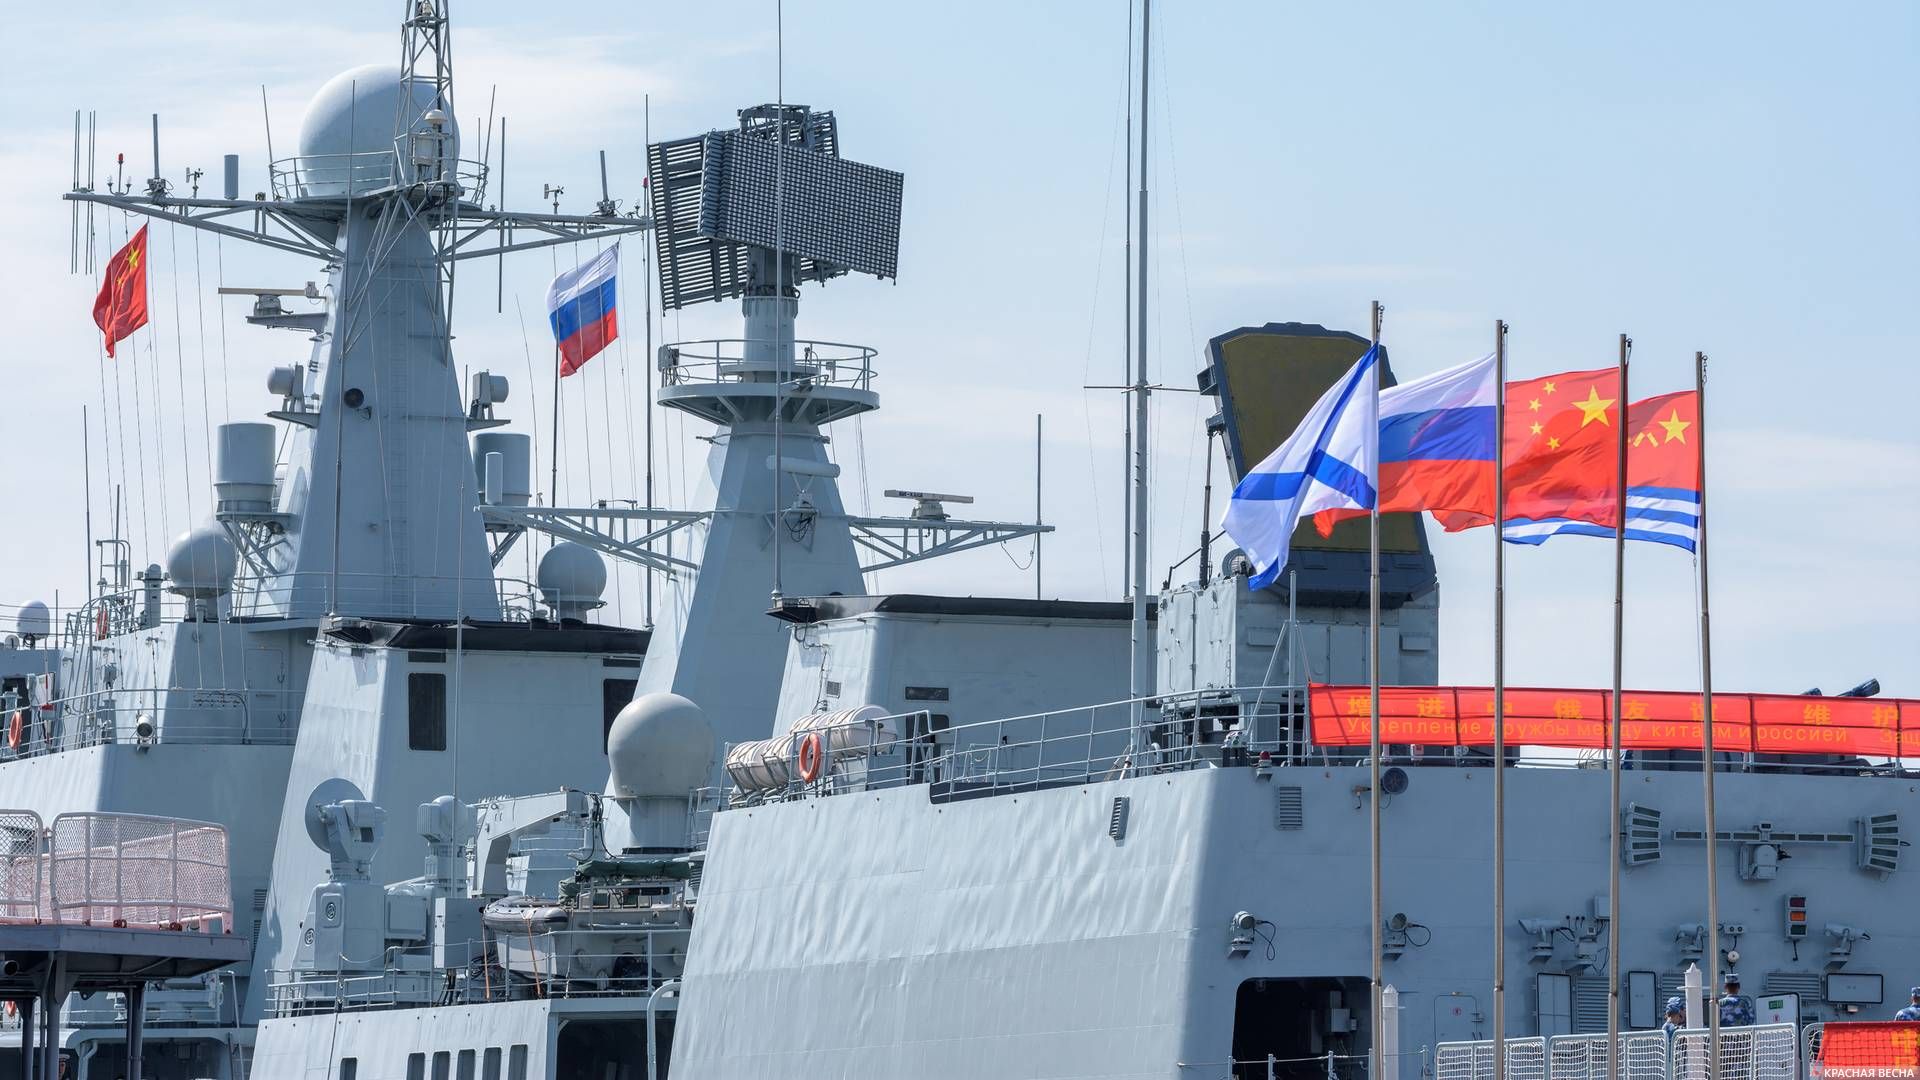 Эсминец «Ши Цзячжуан» у причала во время учений «Морское взаимодействие-2017», Владивосток, Россия.